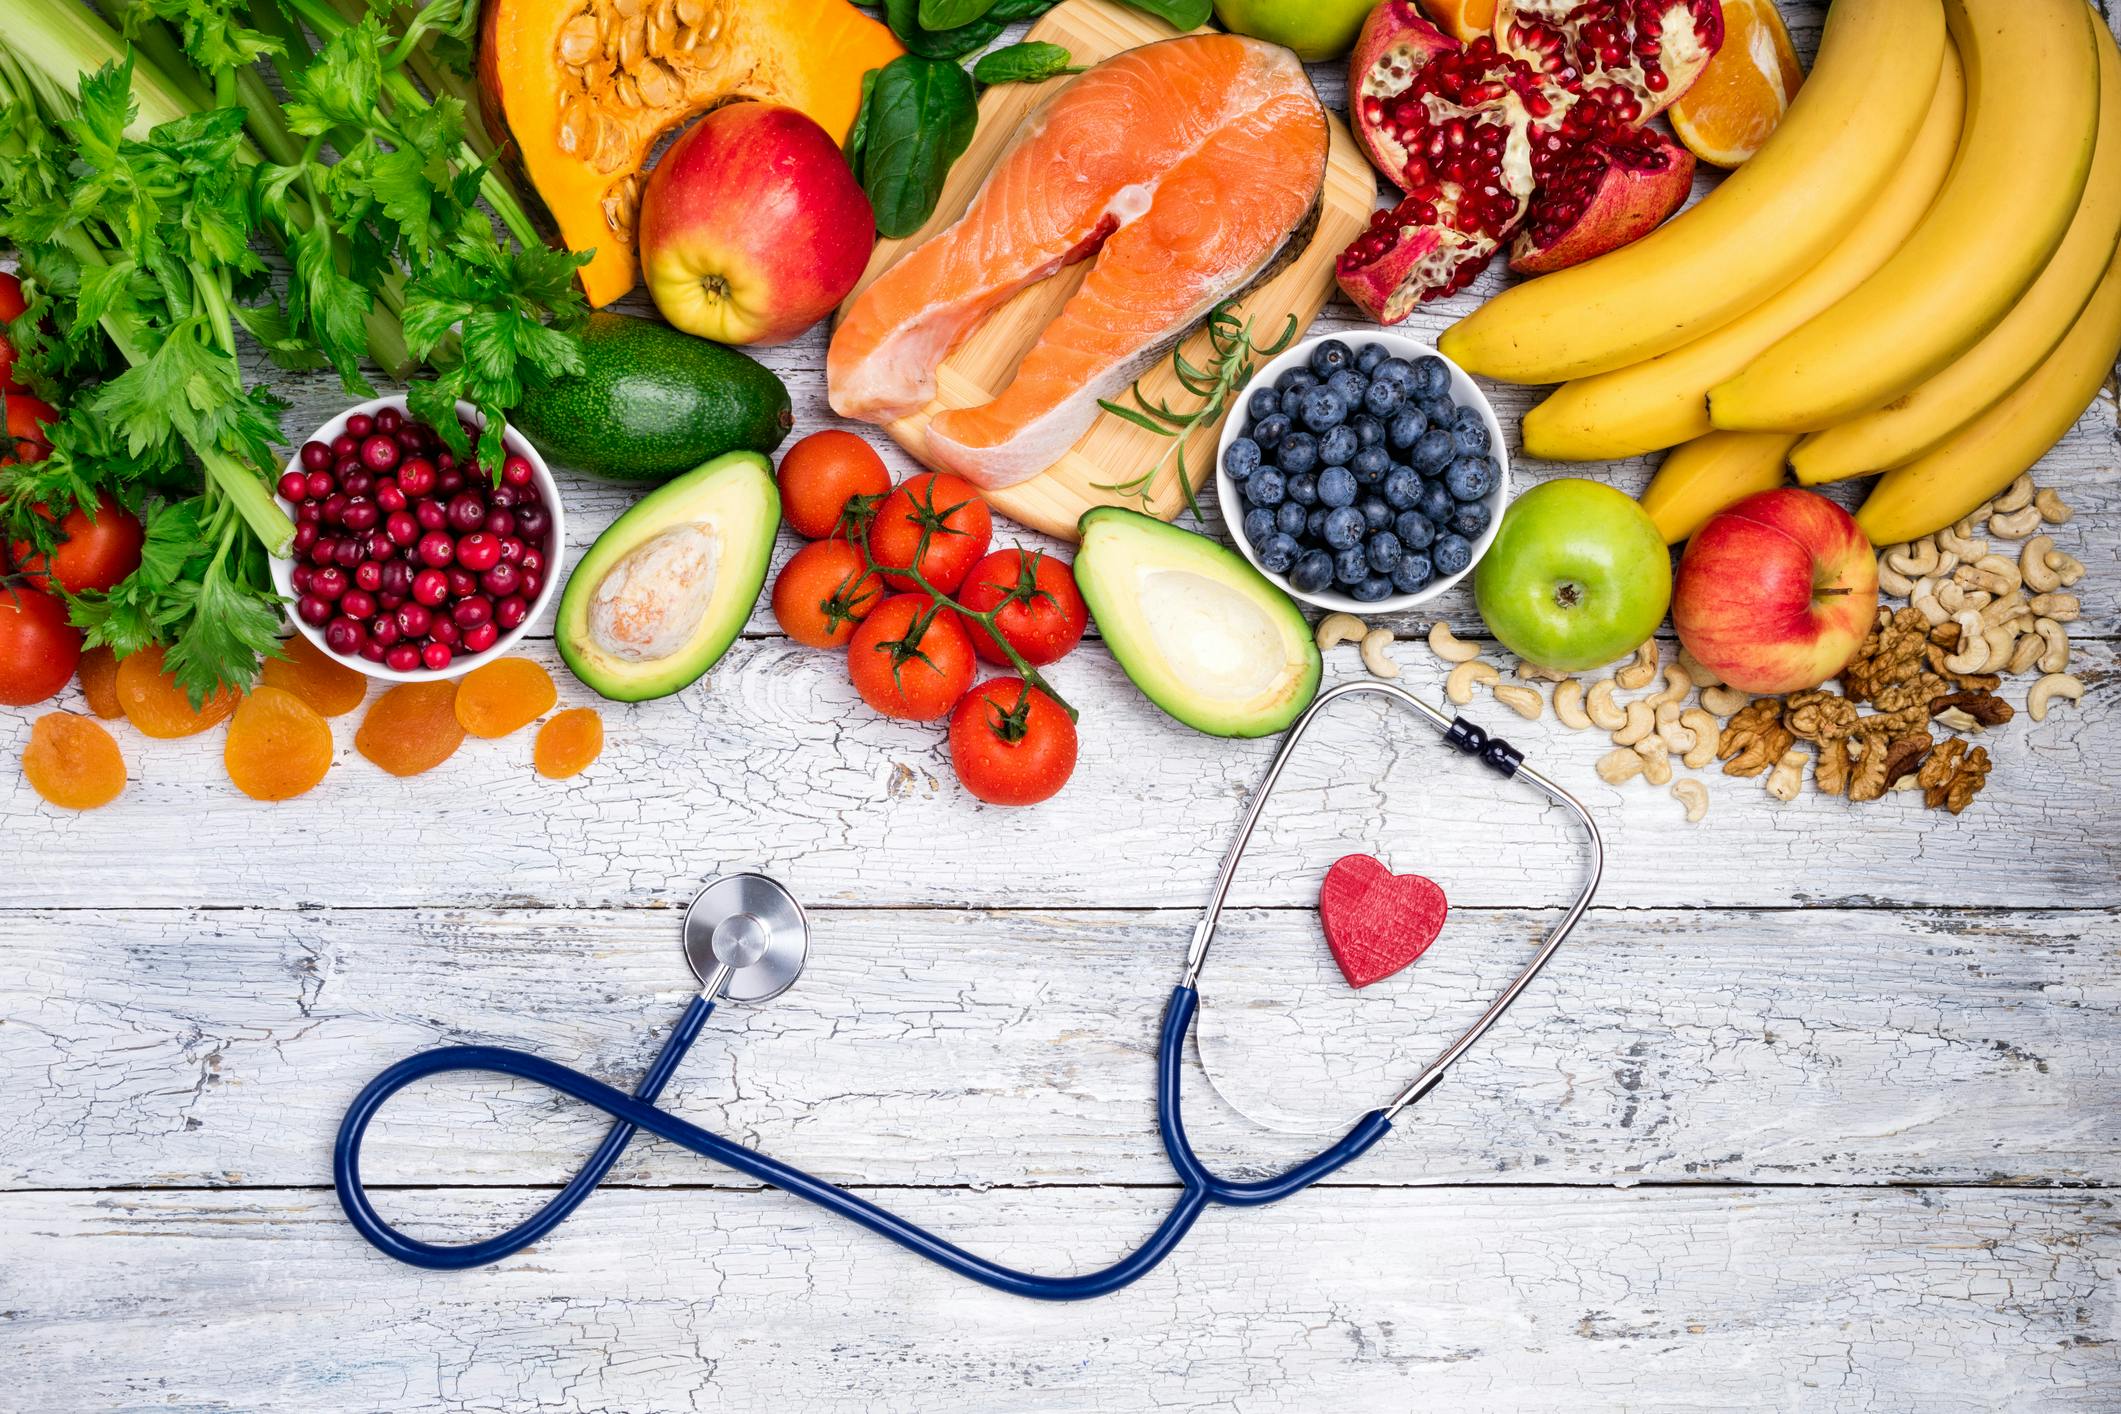 AHA: Focus on healthy foods, not diversity - Diet Doctor